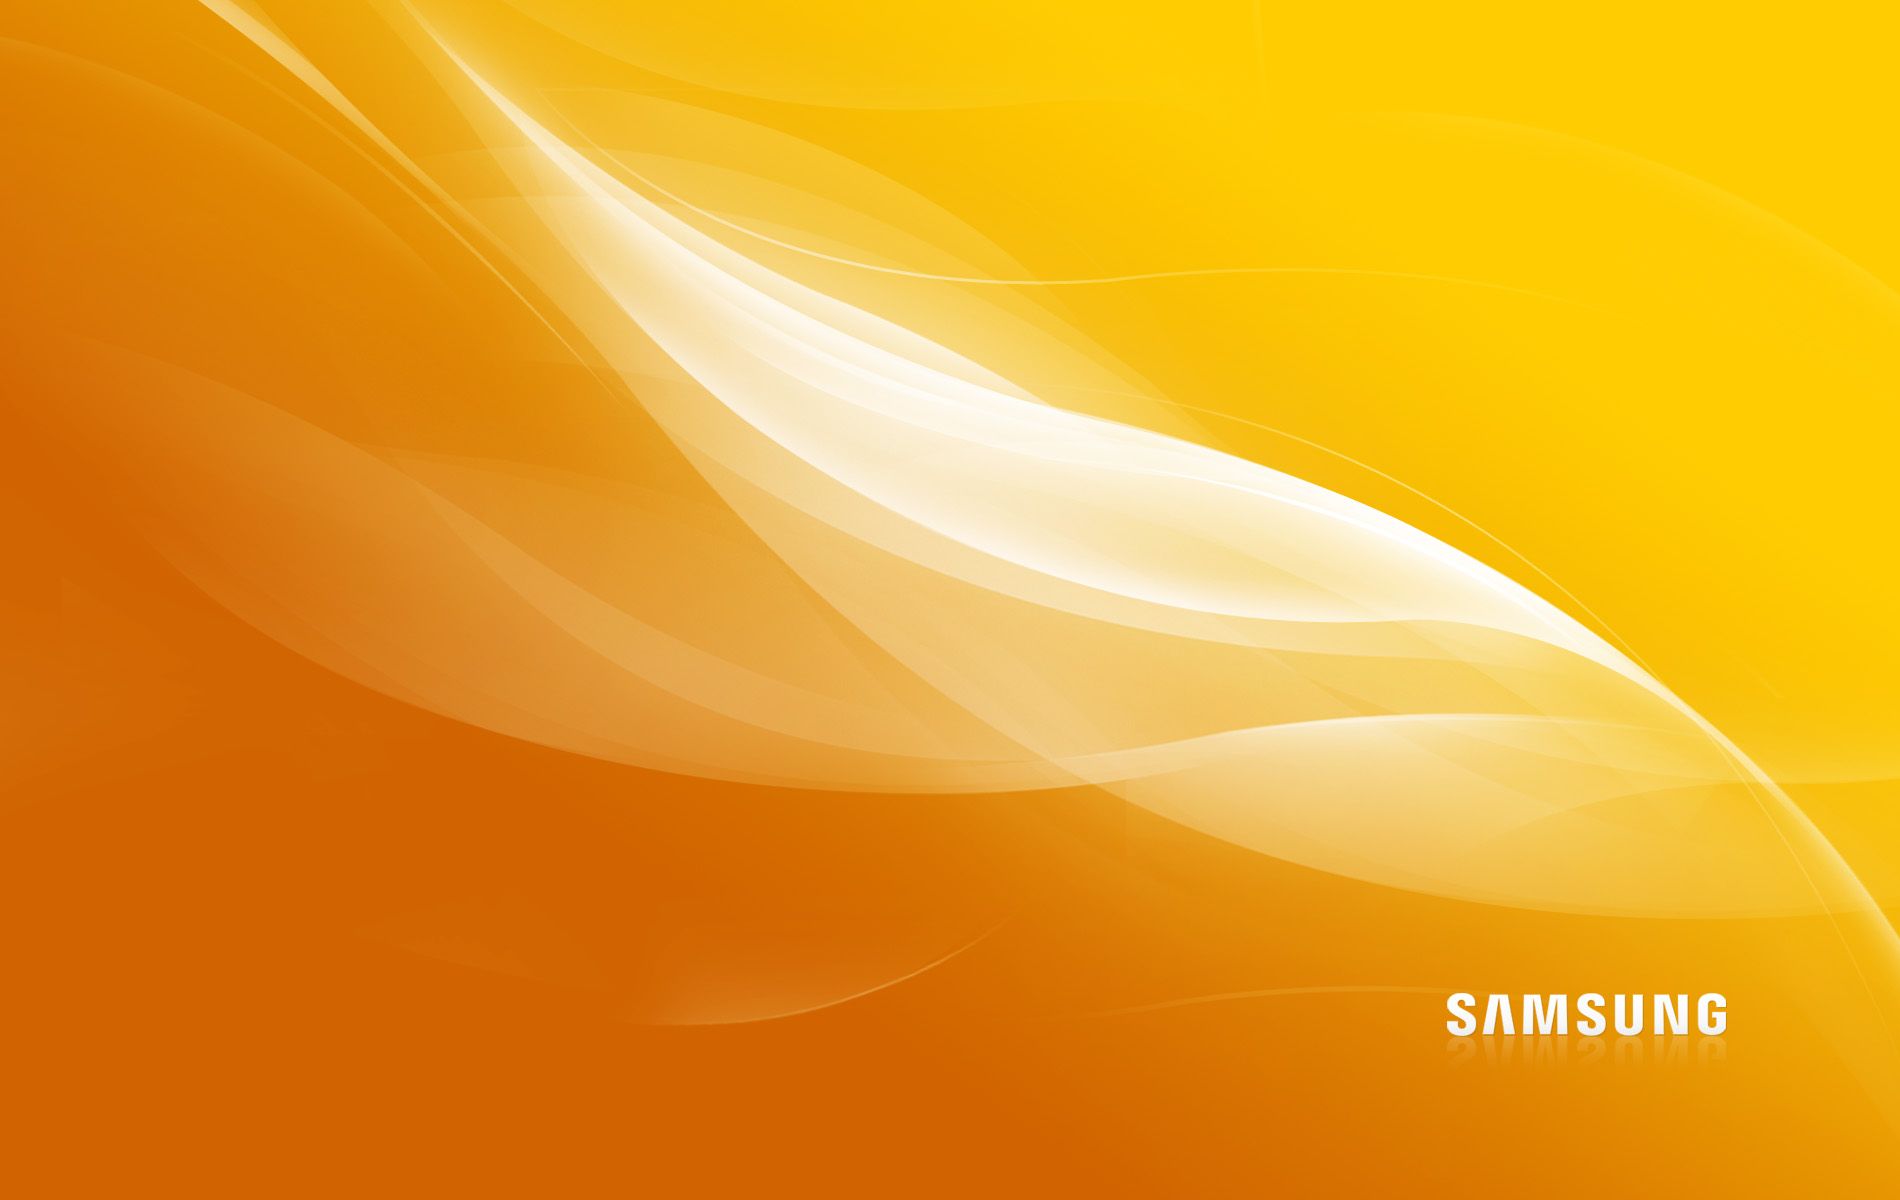 Samsung Desktop Wallpapers